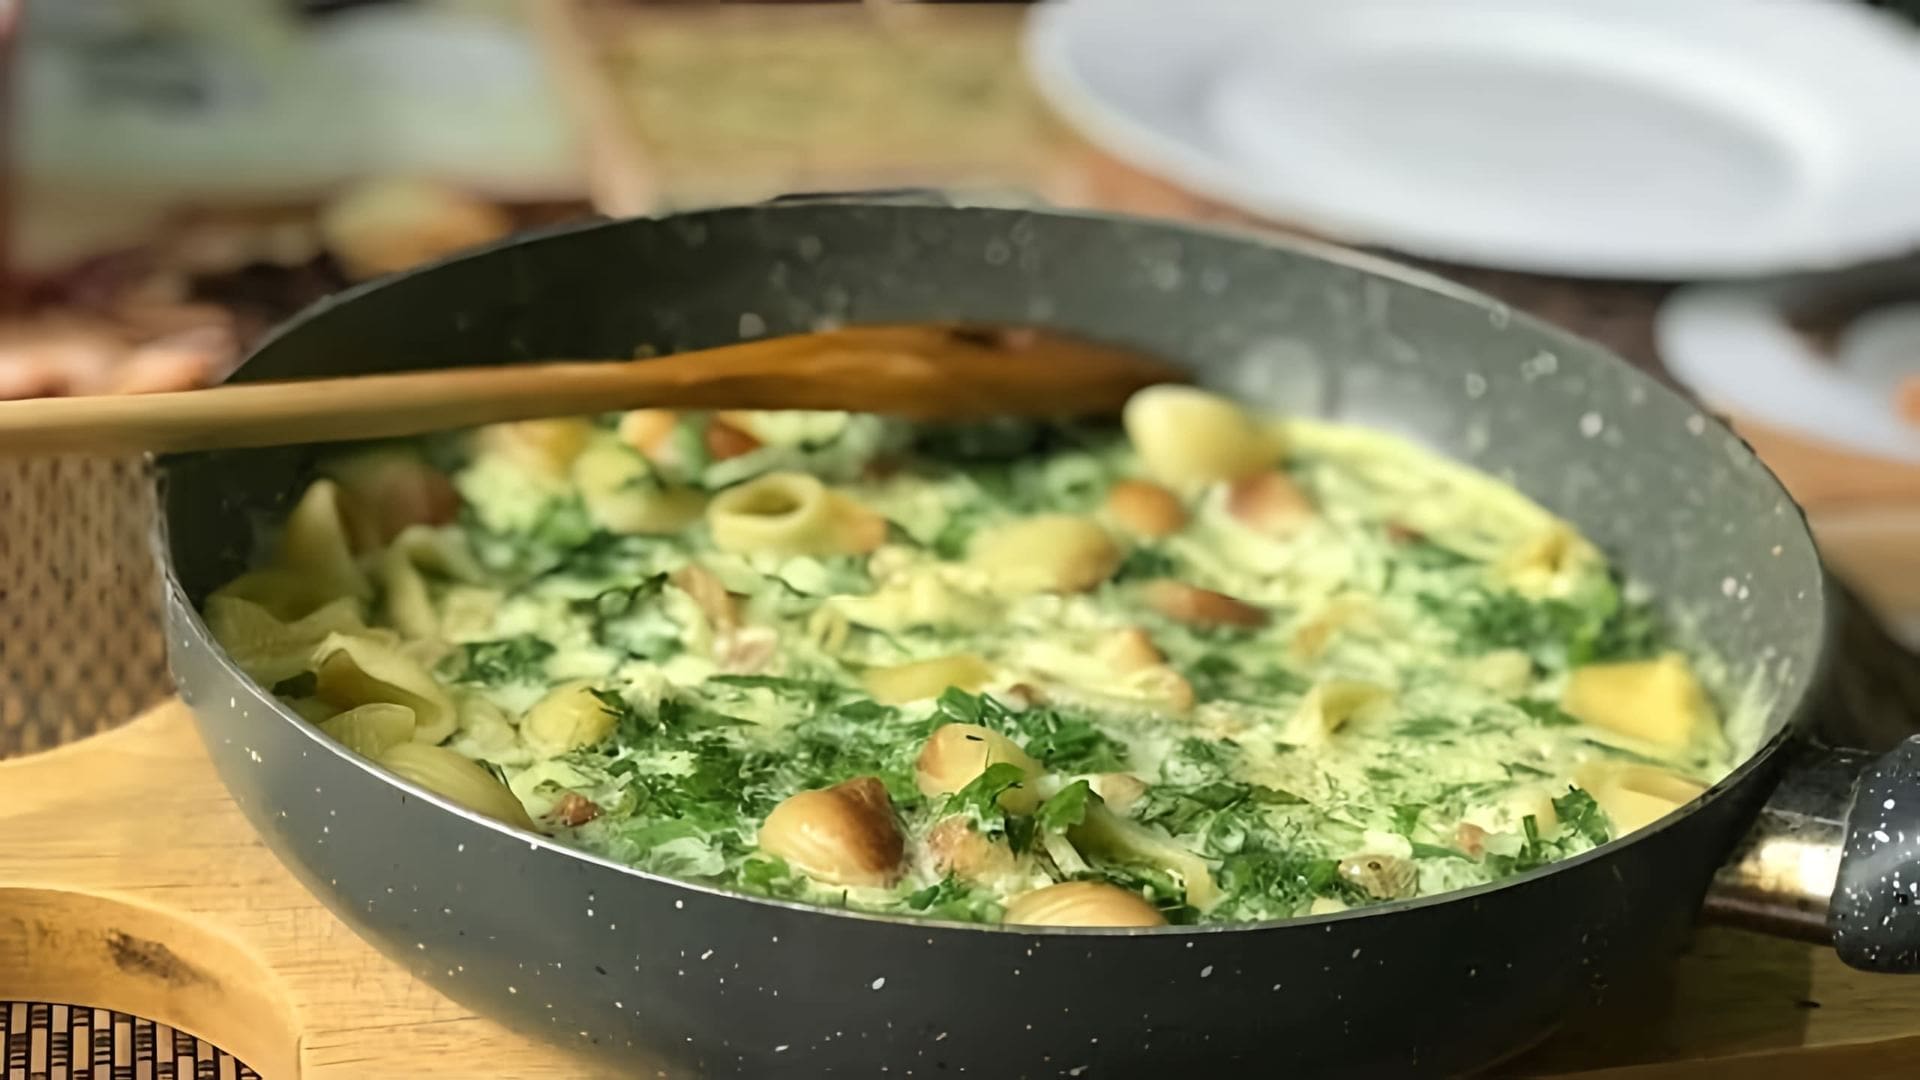 В этом видео демонстрируется процесс приготовления завтрака или обеда из вчерашних макарон